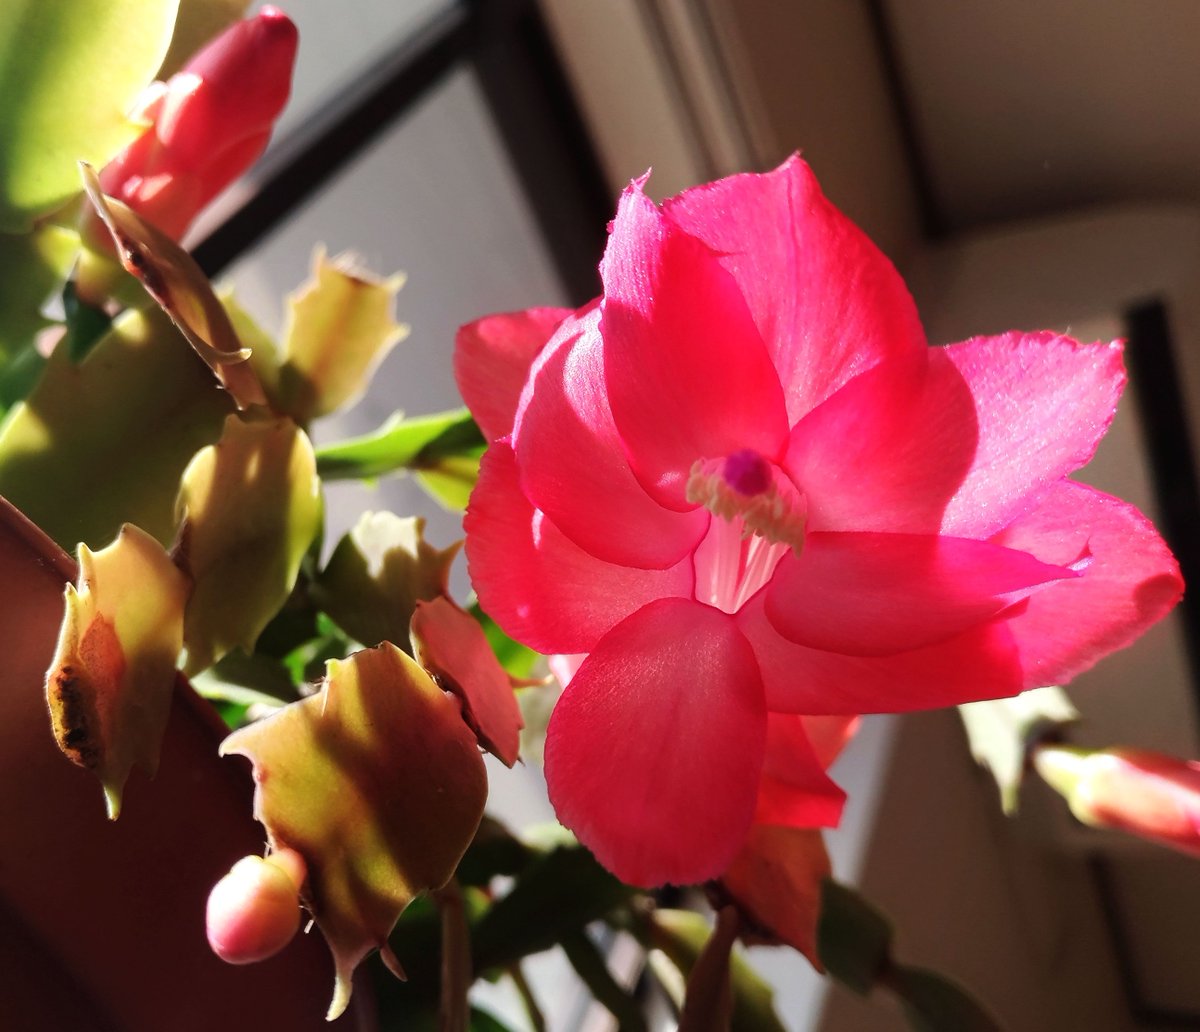 こころんグリーン シャコバサボテンの花が開きました 花の真下から撮ってみました ピンクの花がとても綺麗です シャコバサボテン ピンクの花 多肉植物 秋の花 秋 園芸品種 園芸 ガーデニング 熊本市南区 熊本